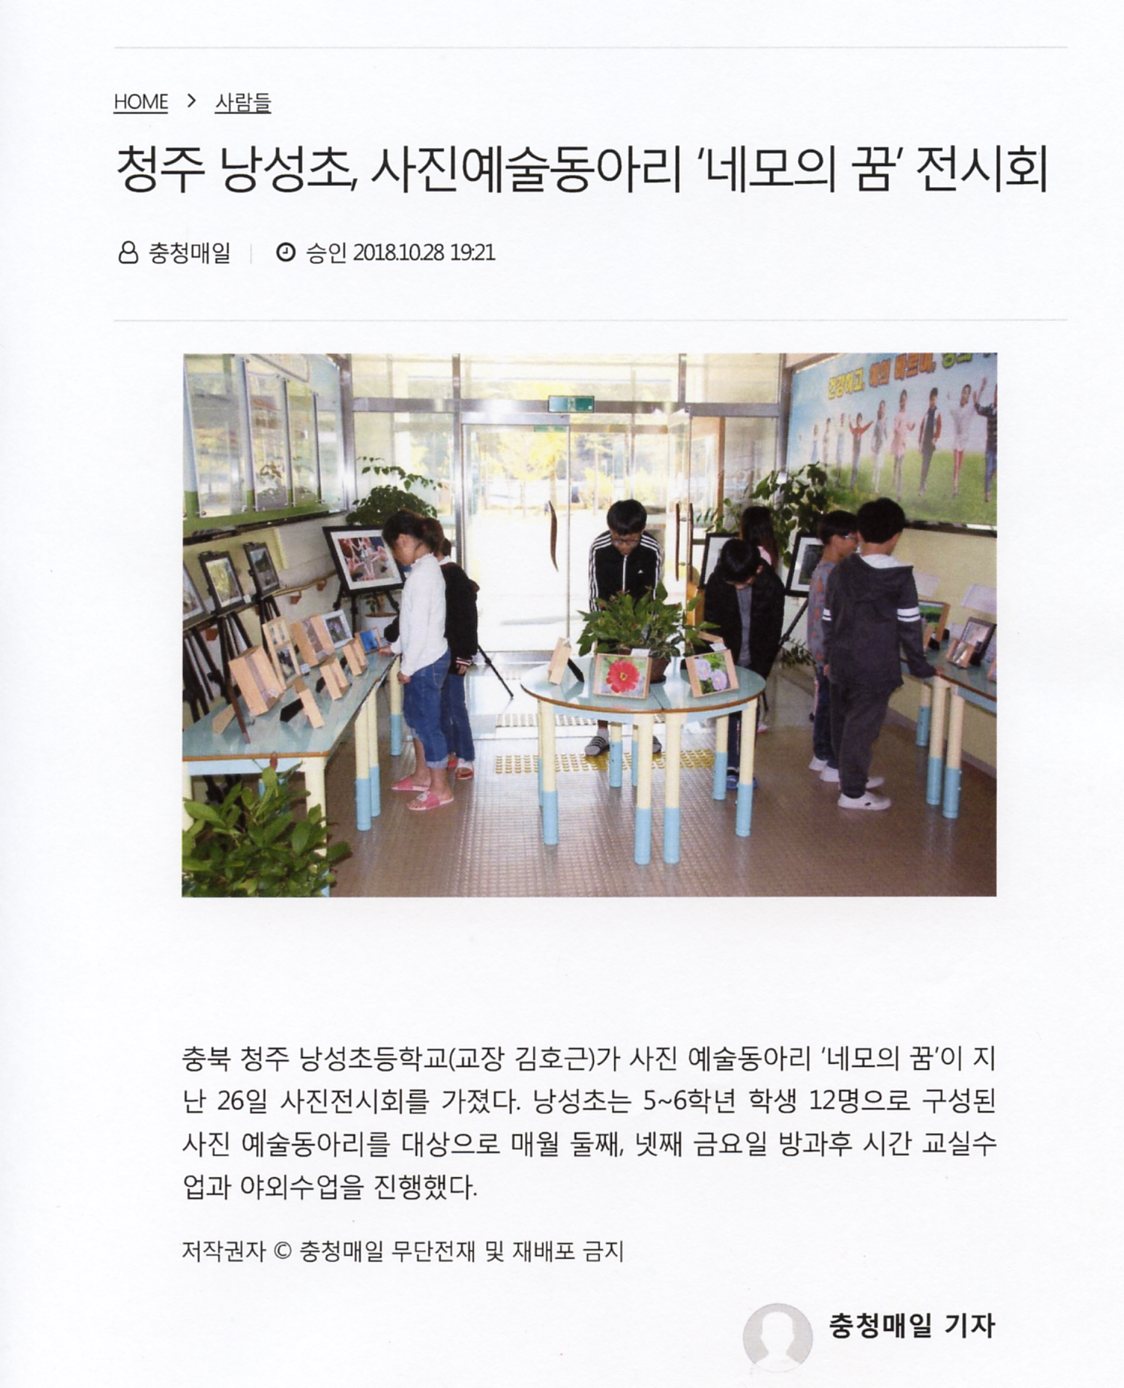 충청매일-사진예술동아리 '네모의 꿈' 전시회